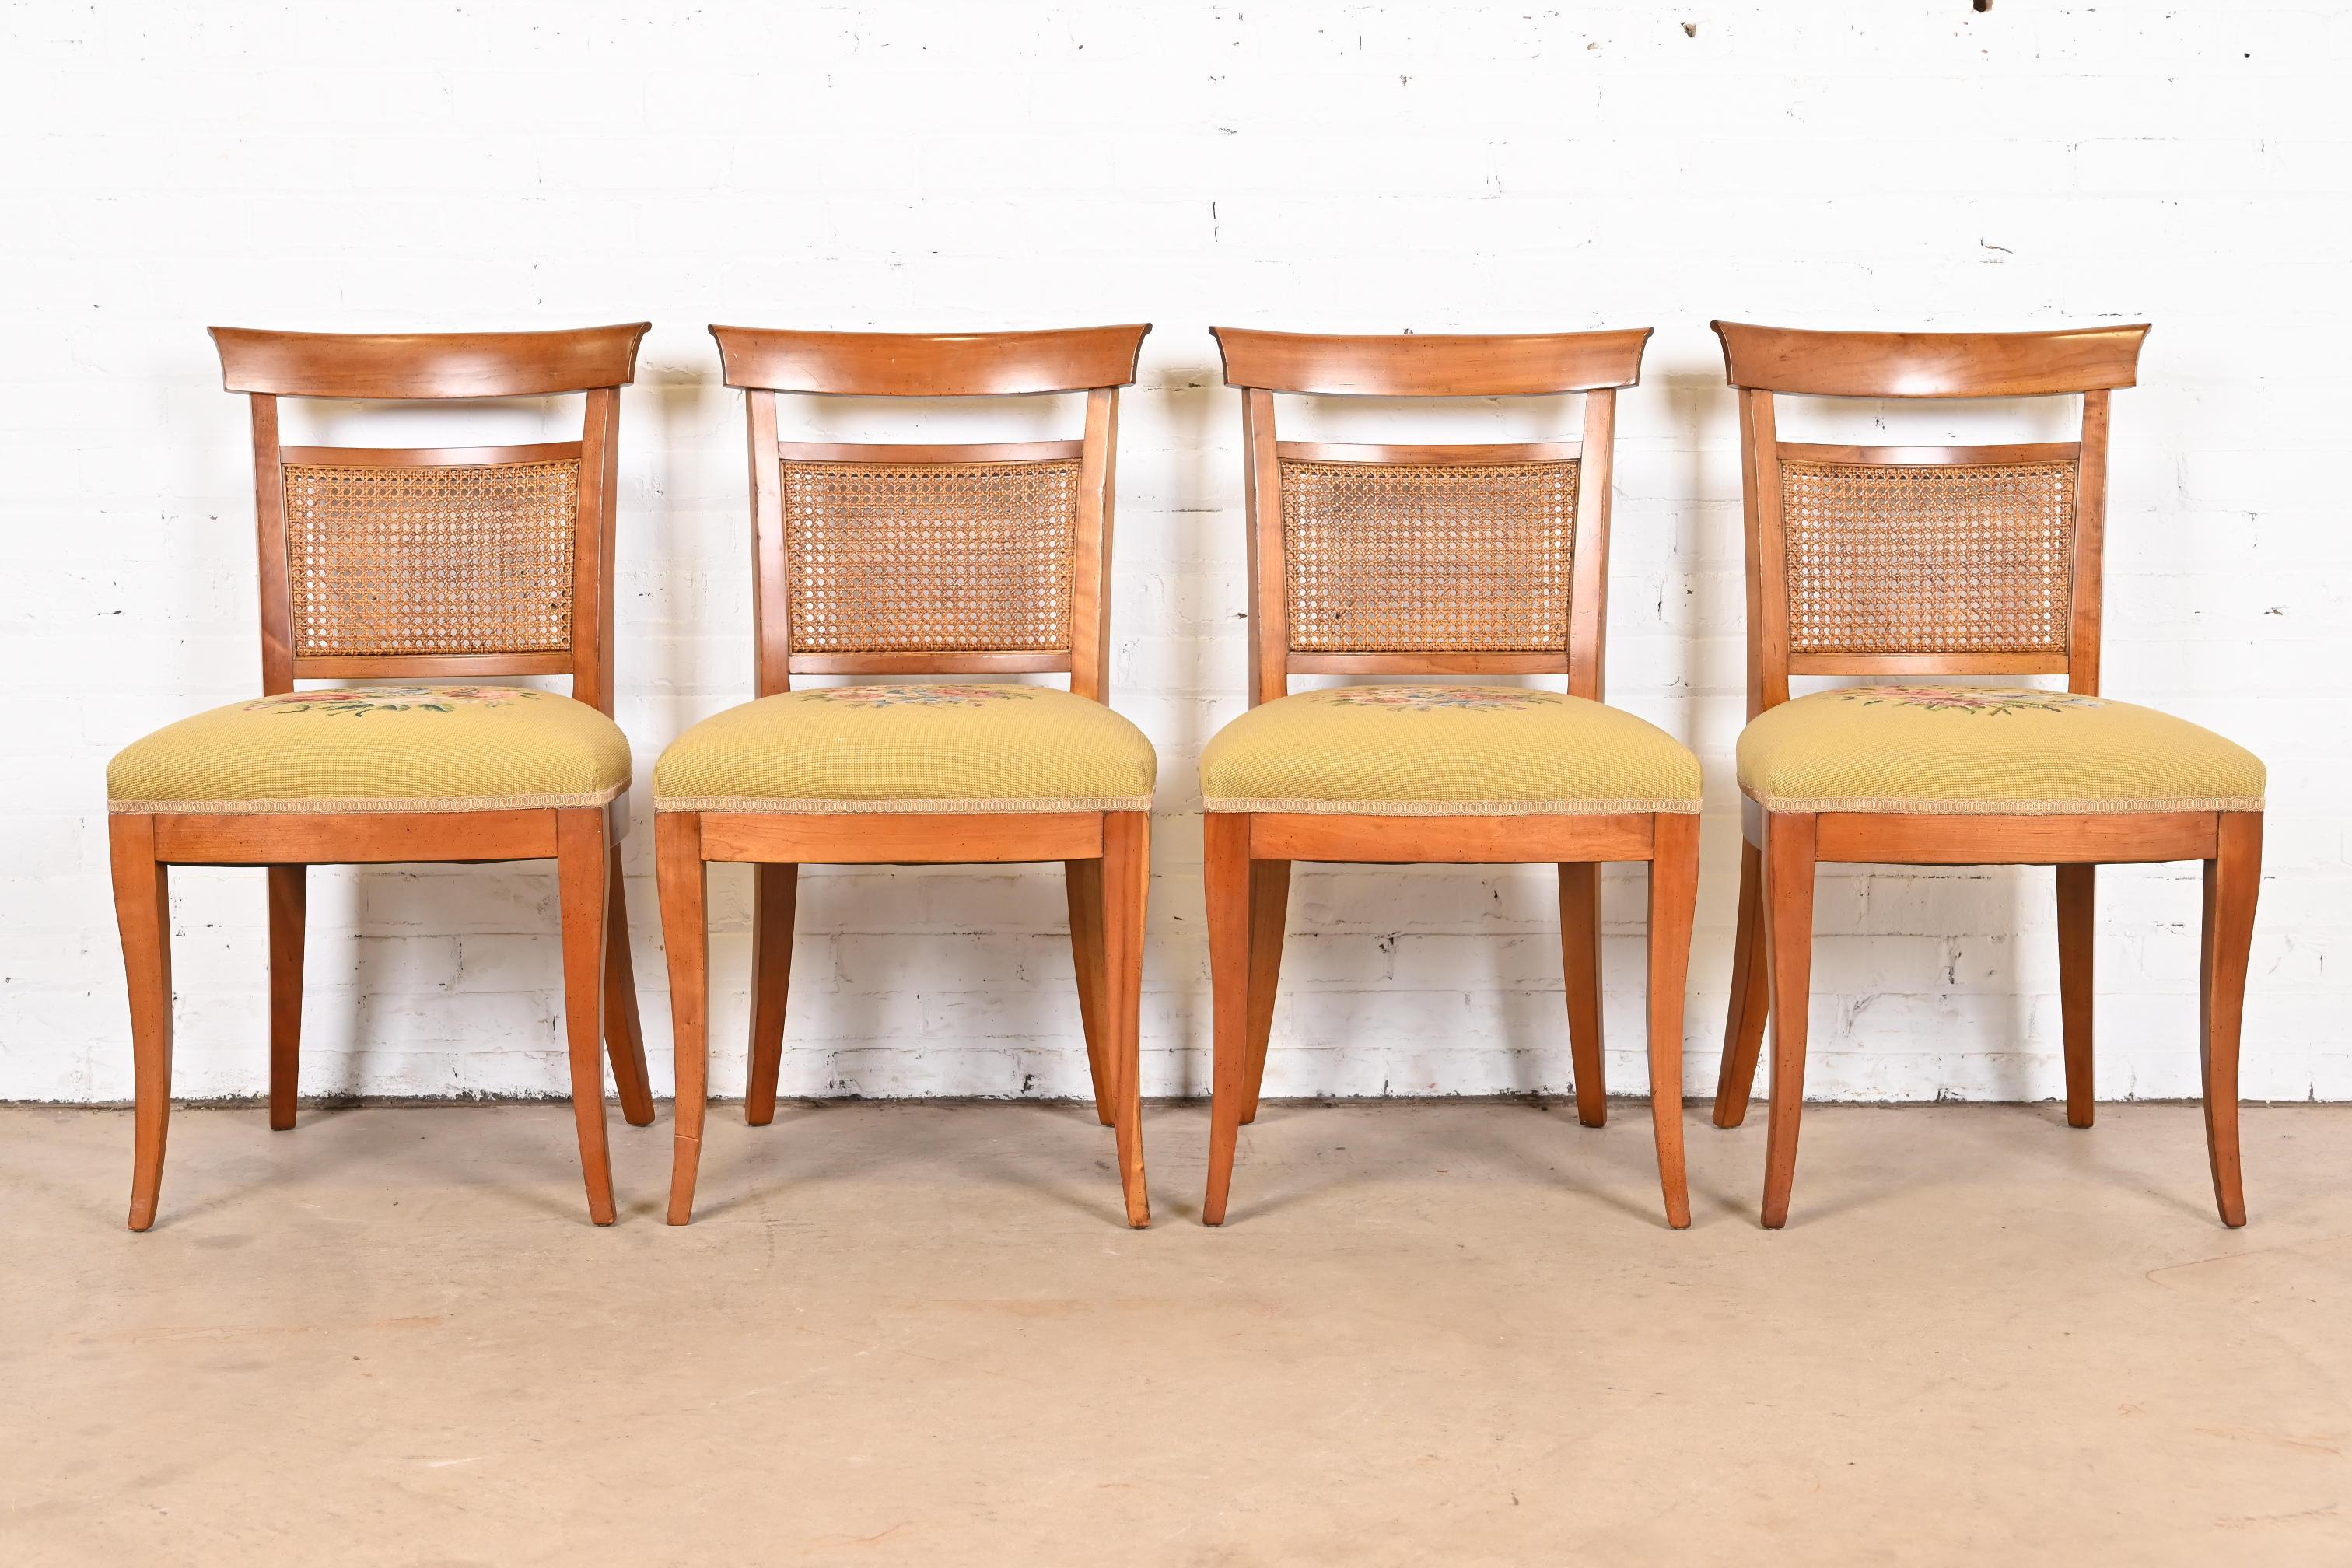 Ein prächtiger Satz von vier französischen Esszimmerstühlen im Regency-Stil

Von Kindel Möbel

USA, ca. 1960er Jahre

Rahmen aus geschnitztem Kirschholz, Rückenlehnen aus Rohrgeflecht und gepolsterte Sitze aus gelber Nadelspitze.

Maße: 19,5 